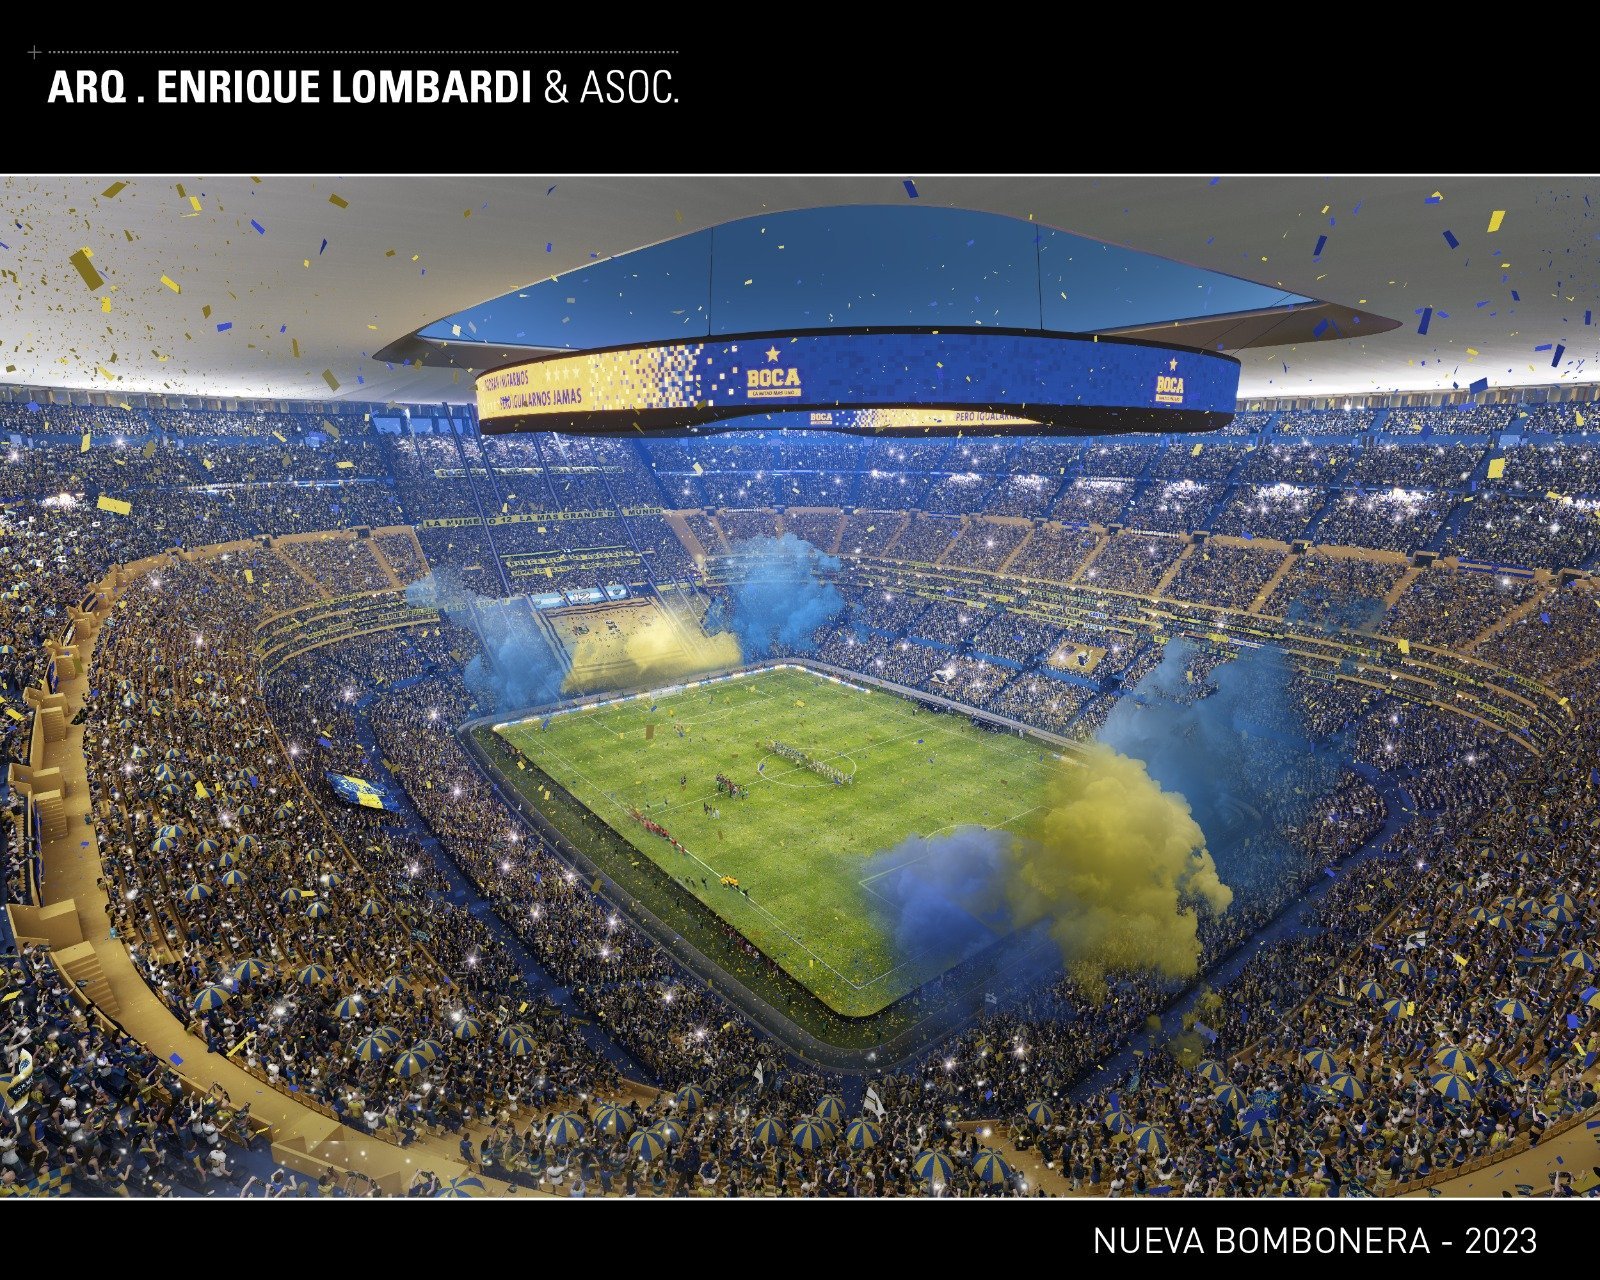 El Impresionante proyecto de la nueva Bombonera de Boca Juniors para 112.000 espectadores